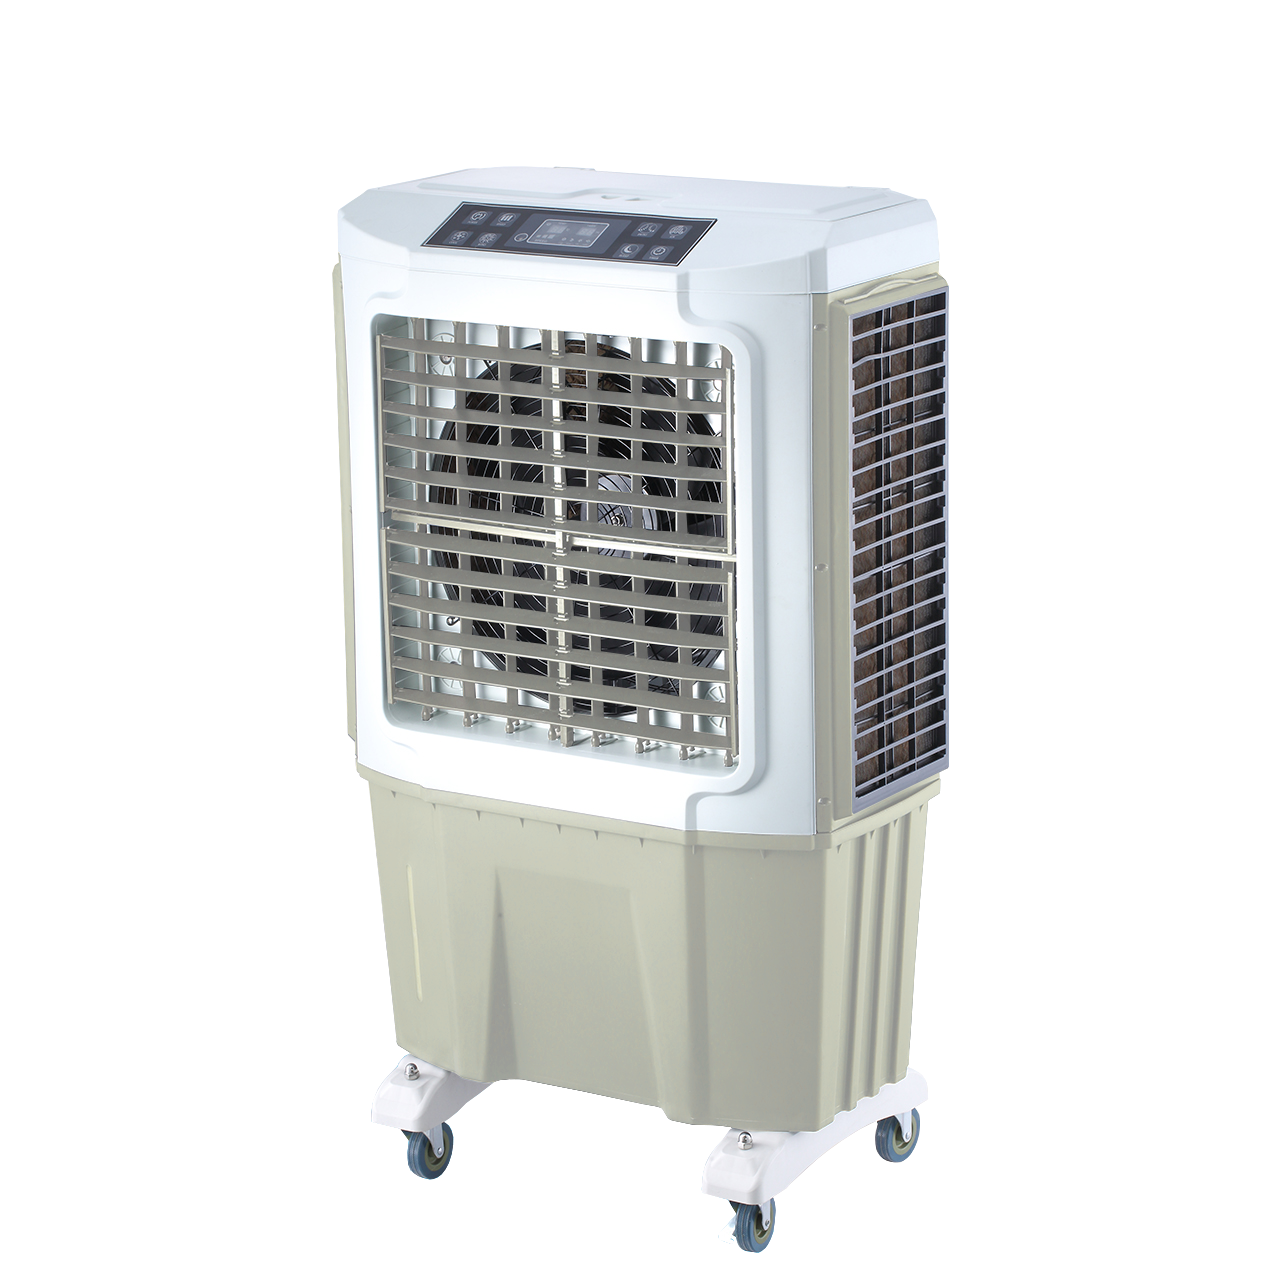 Воздухоохладитель VAB06-EQ